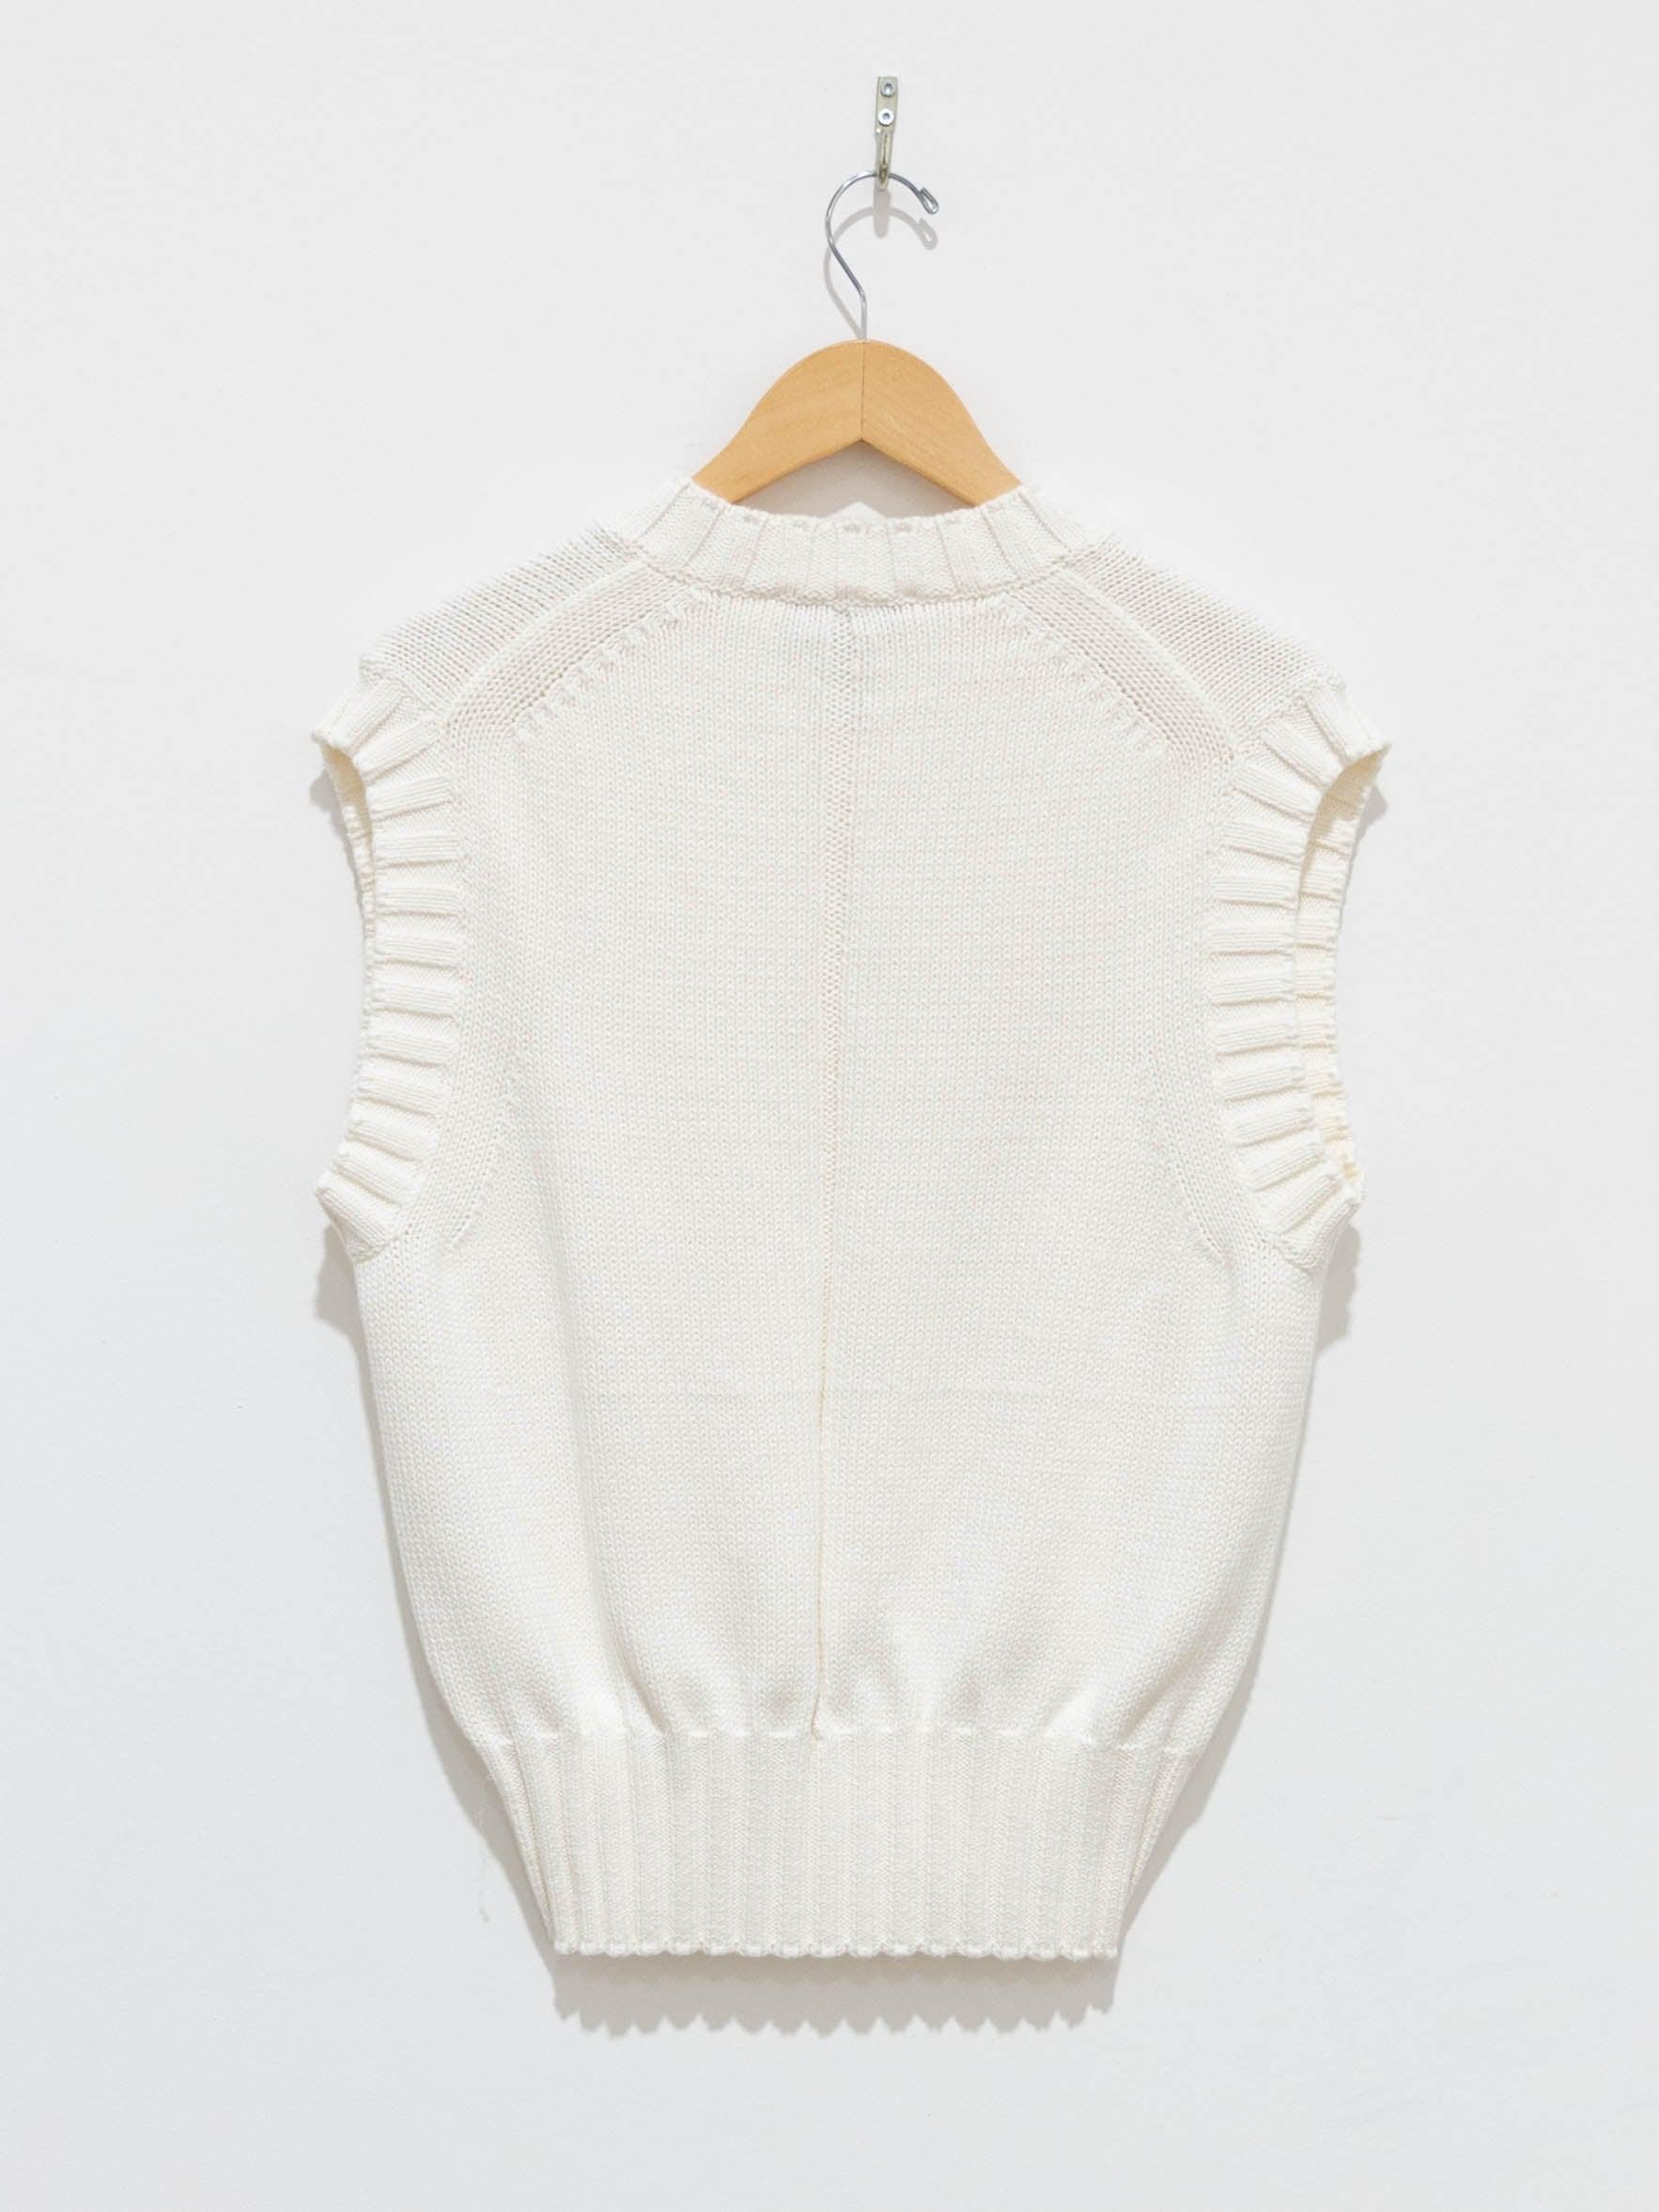 Namu Shop - Studio Nicholson Marit Knit Vest - Cream